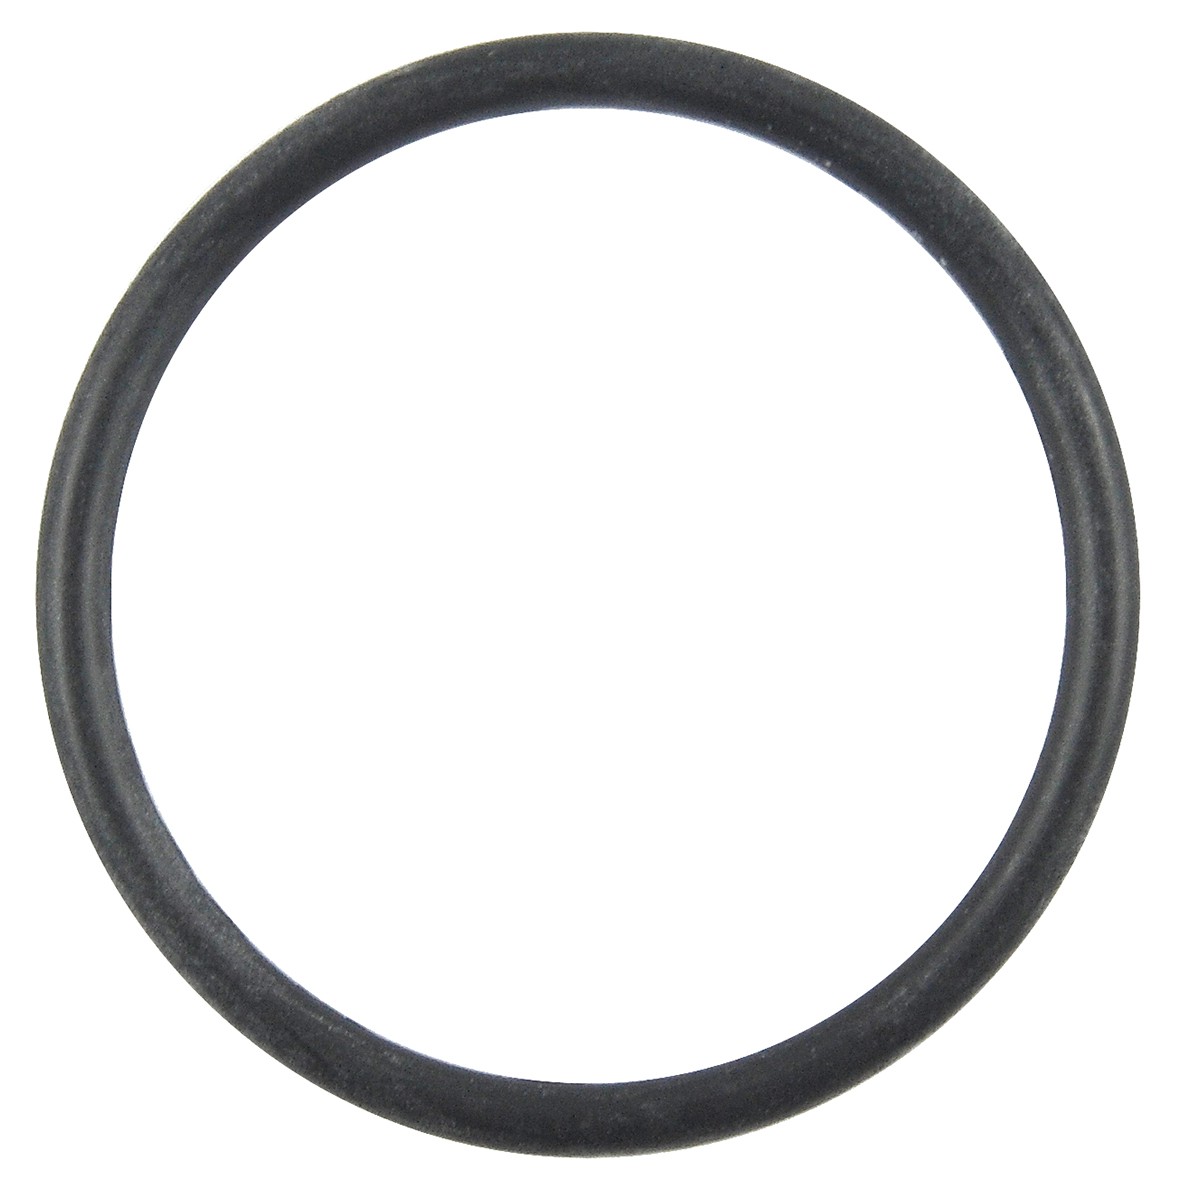 O-Ring / 5,80 x 78,80 m / Kubota L4508/L4708/L5018/M5000/M6040 / 3A111-09830 / 5-27-101-78